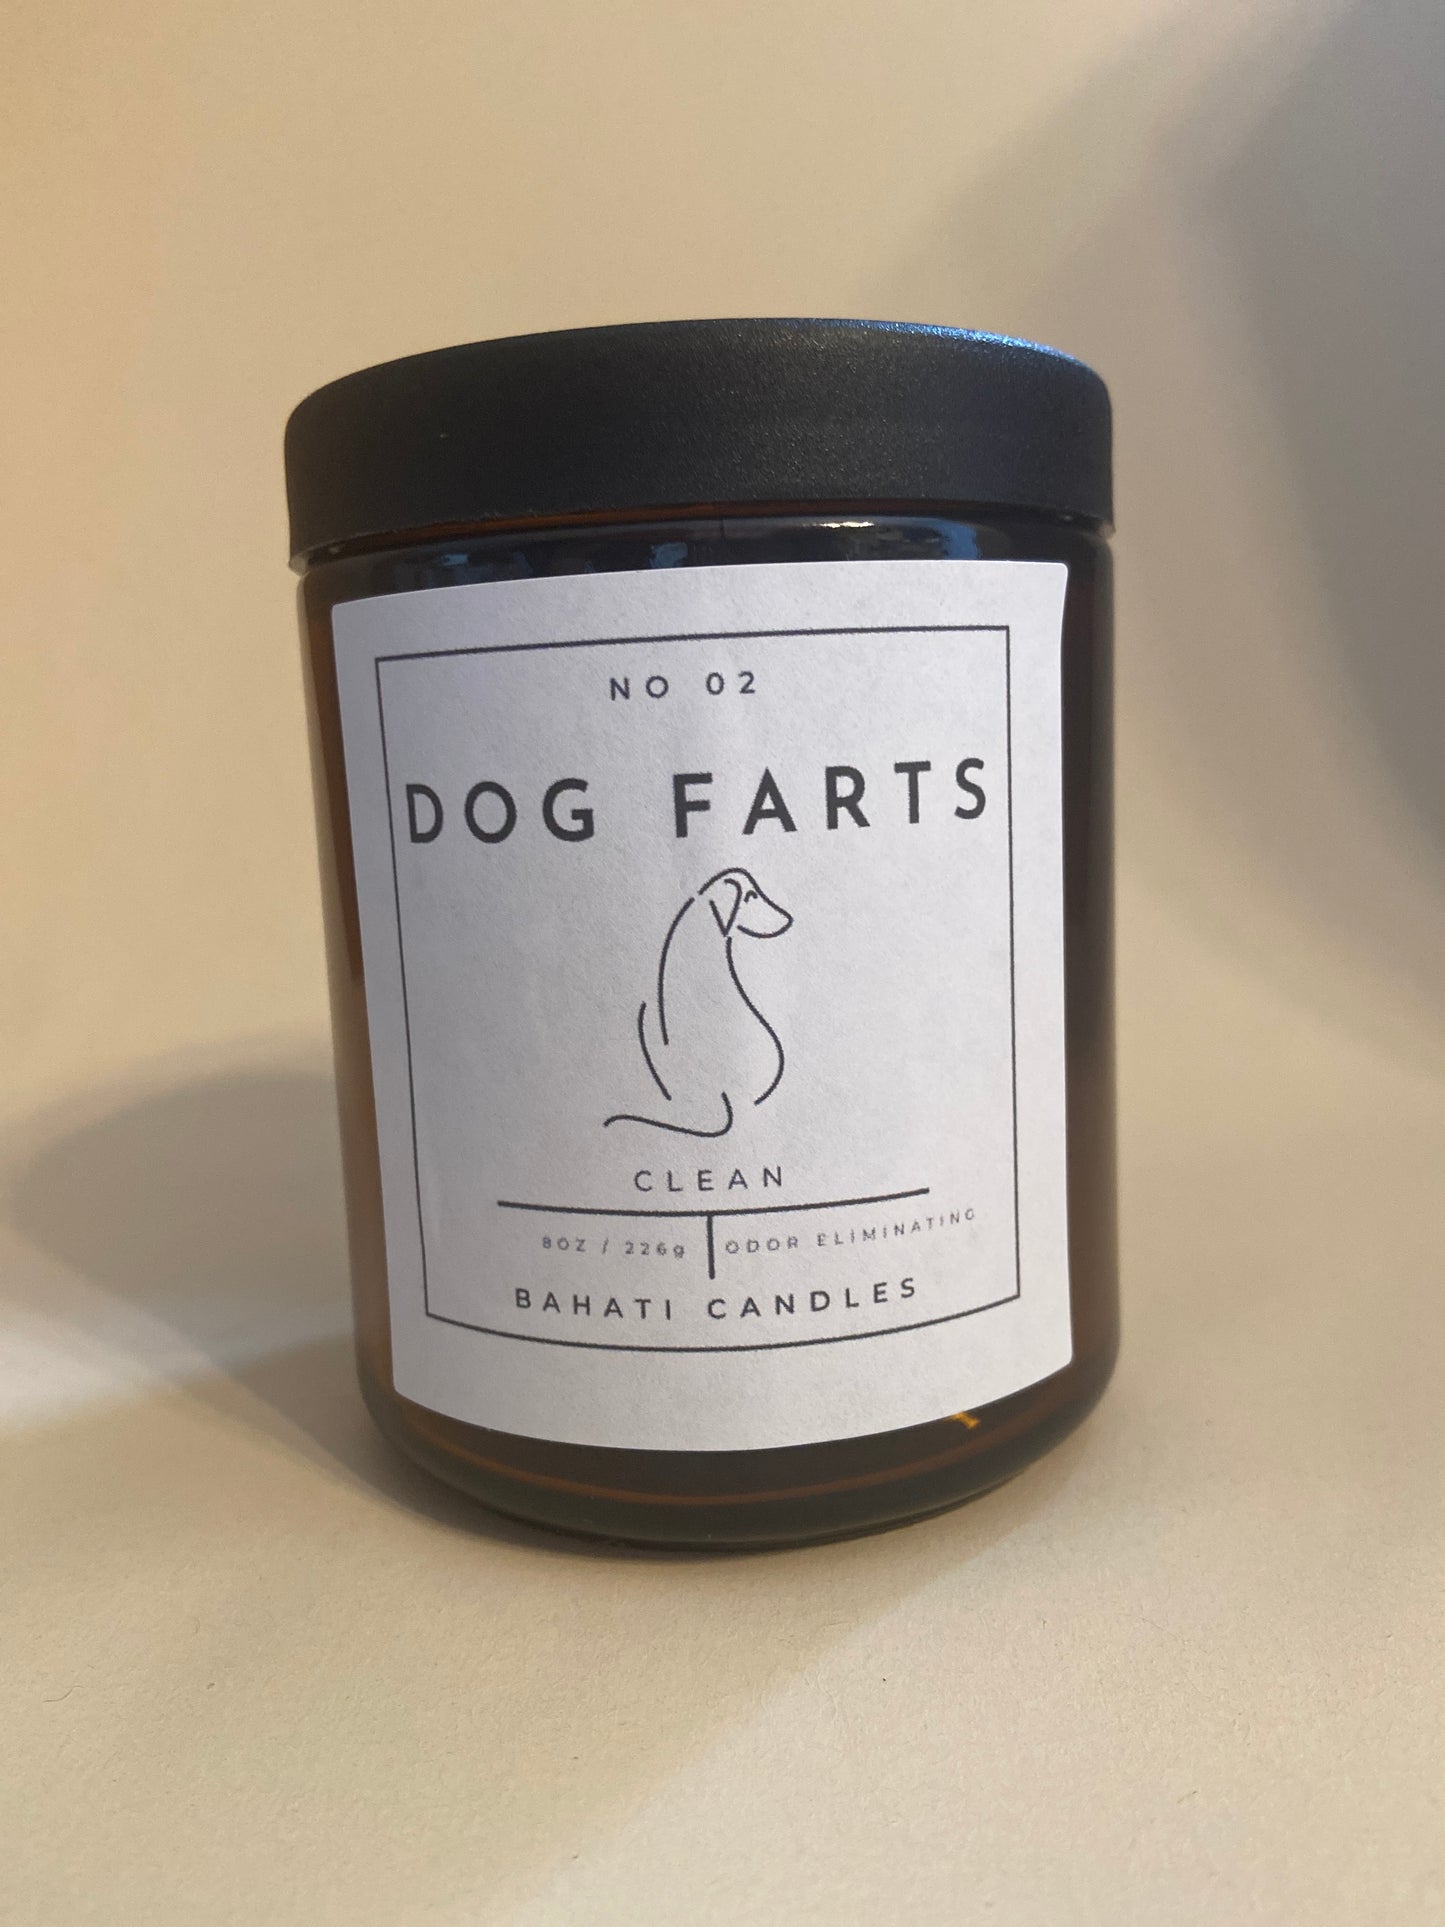 Dog Farts